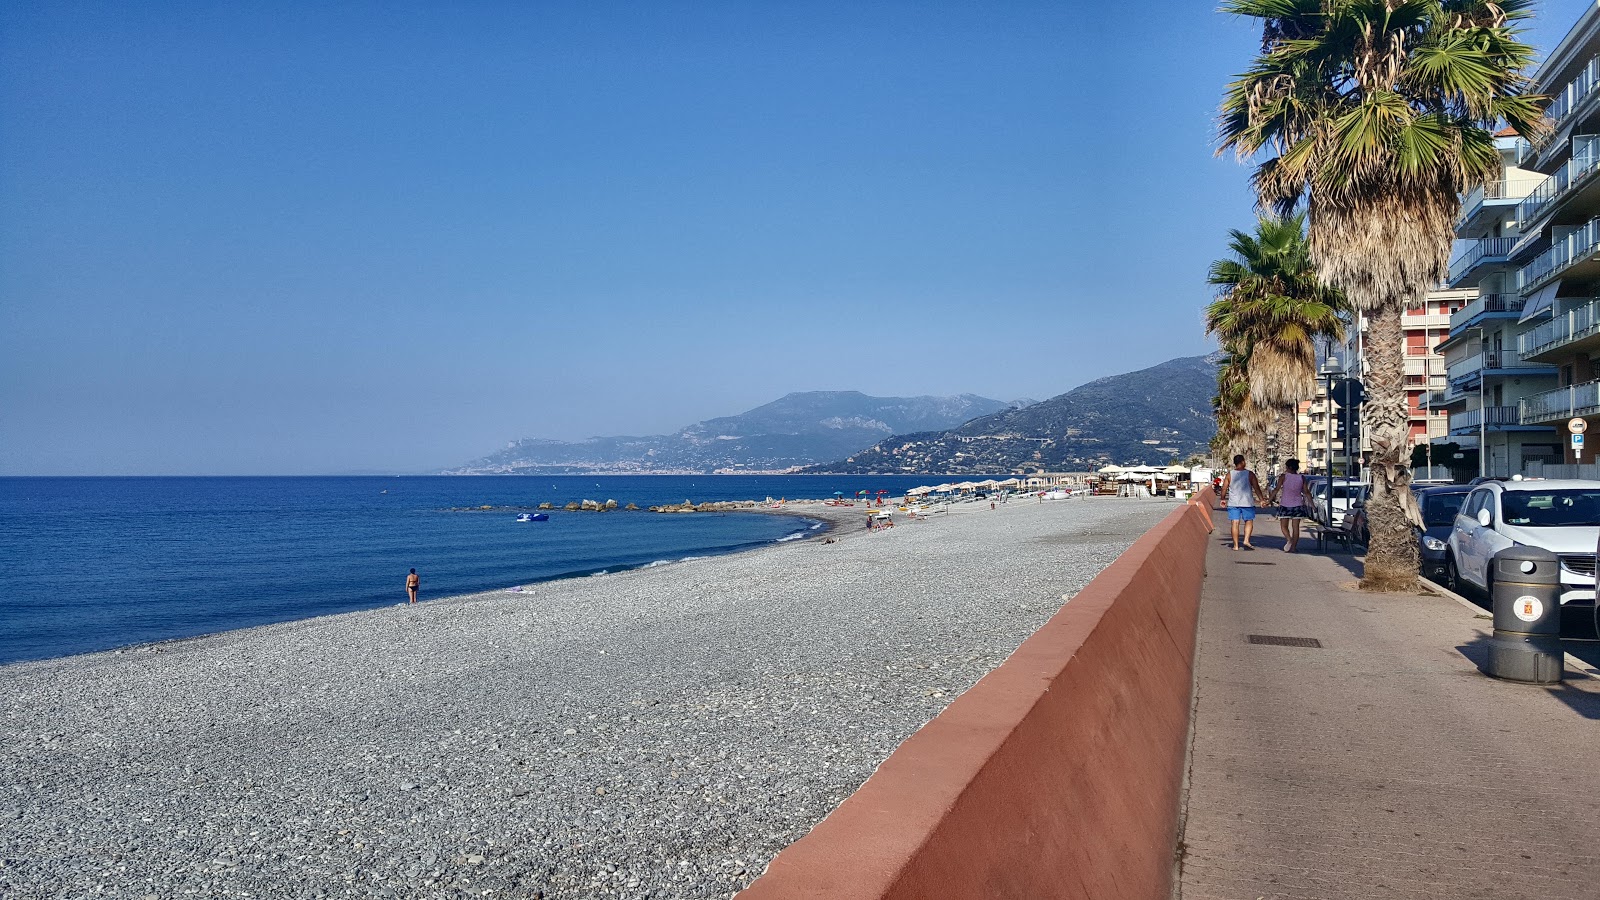 Foto von Spiaggia Ventimiglia mit tolle buchten